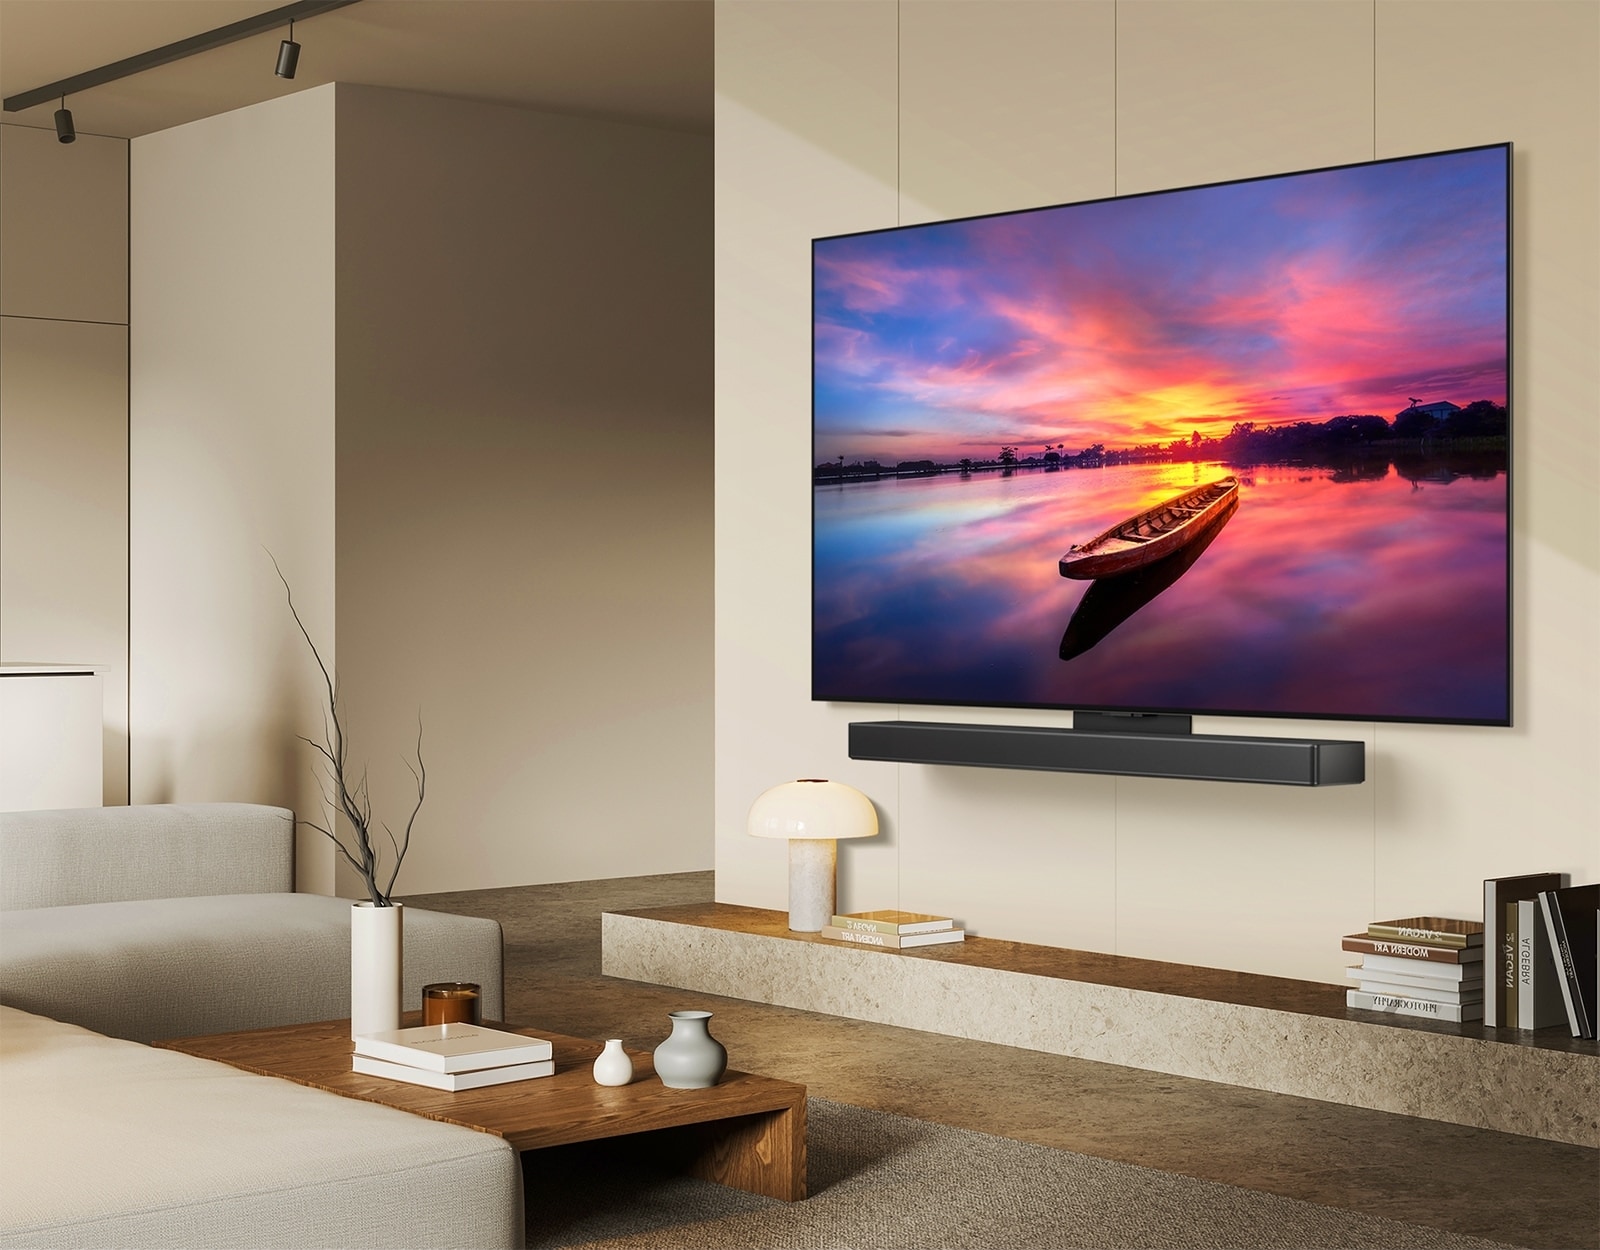 LG OLED TV, OLED C4 quay hướng 45 độ về bên trái đang cho thấy cảnh hoàng hôn tuyệt đẹp với chiếc thuyền trên hồ, khi TV được gắn vào Soundbar LG thông qua giá đỡ Synergy trong không gian sống tối giản.